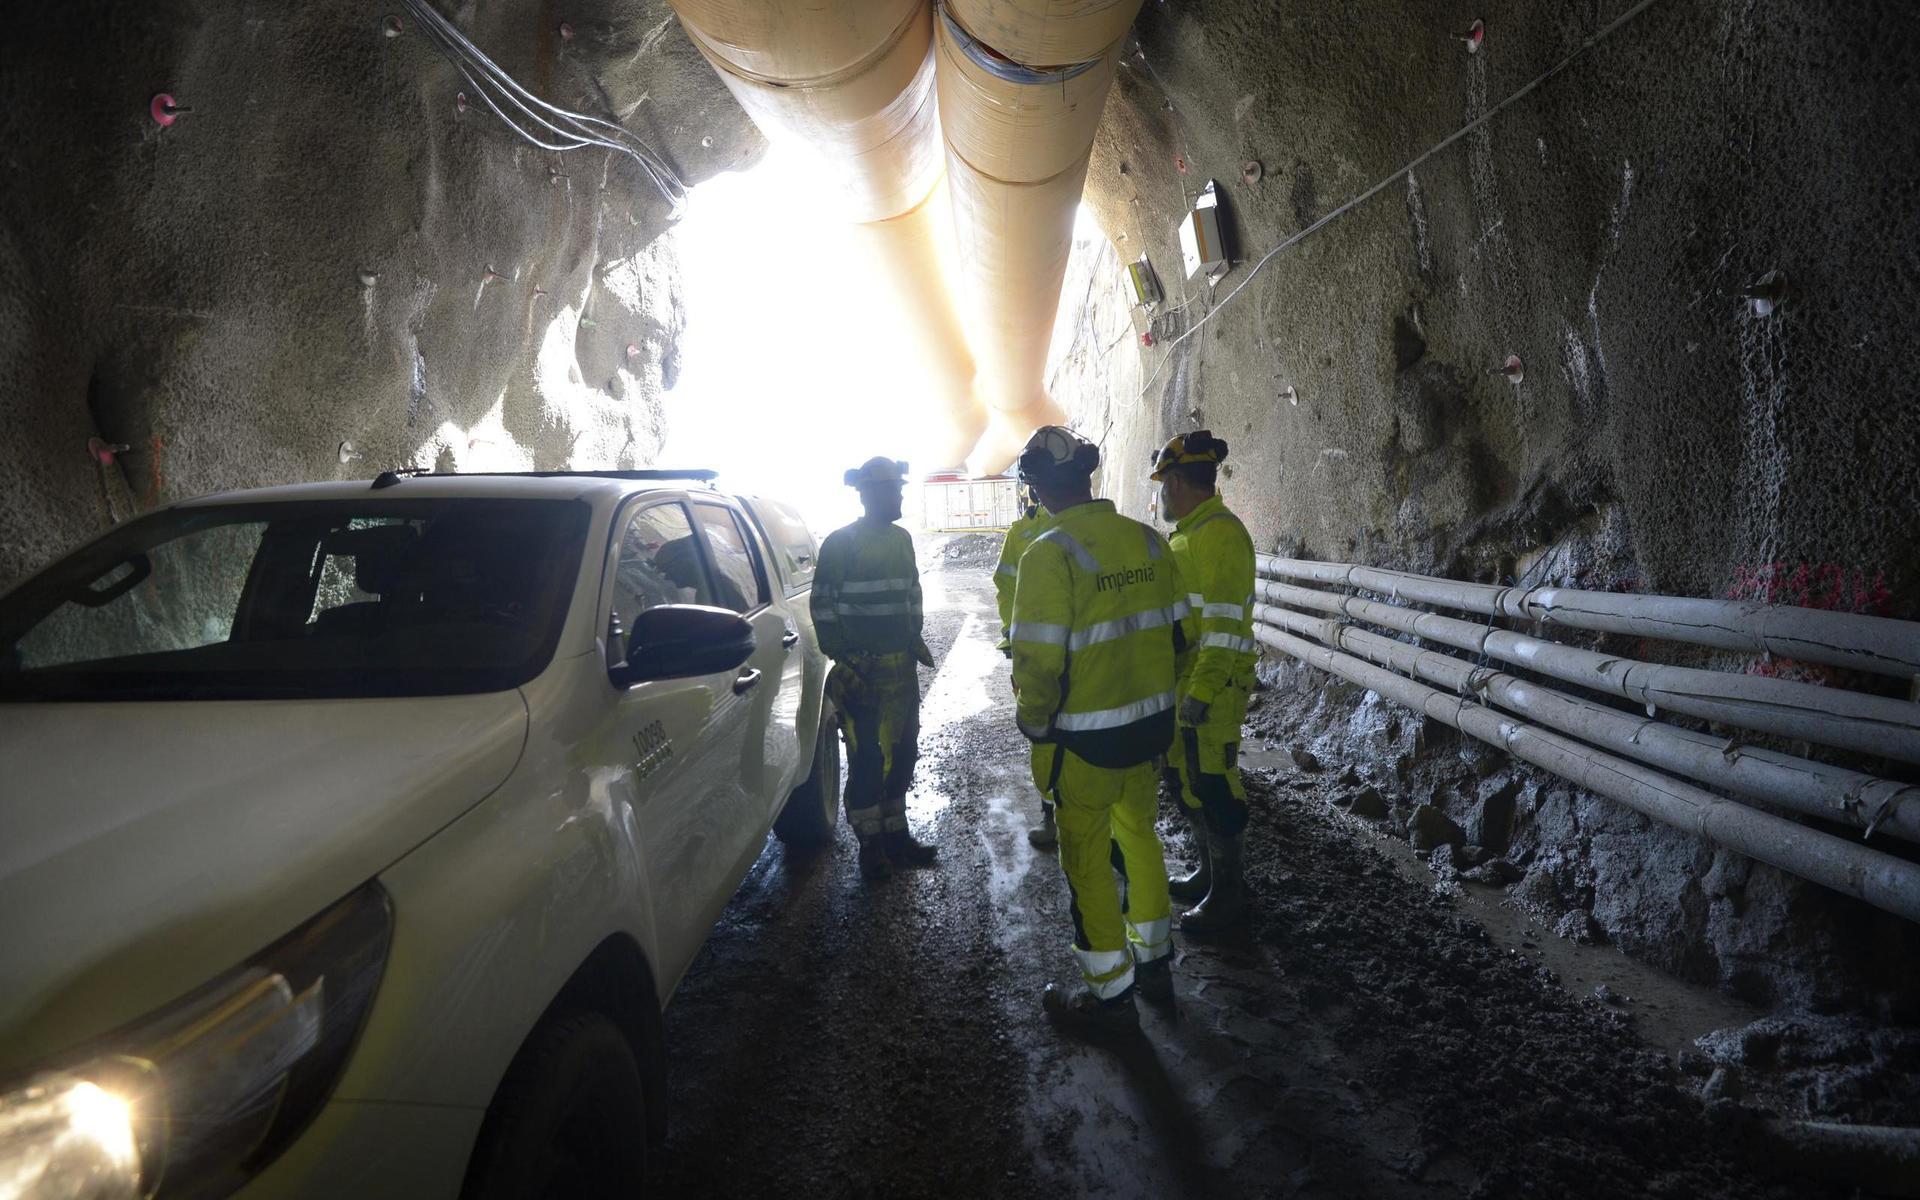 Tunnelmynningen för servicetunneln i Breared.